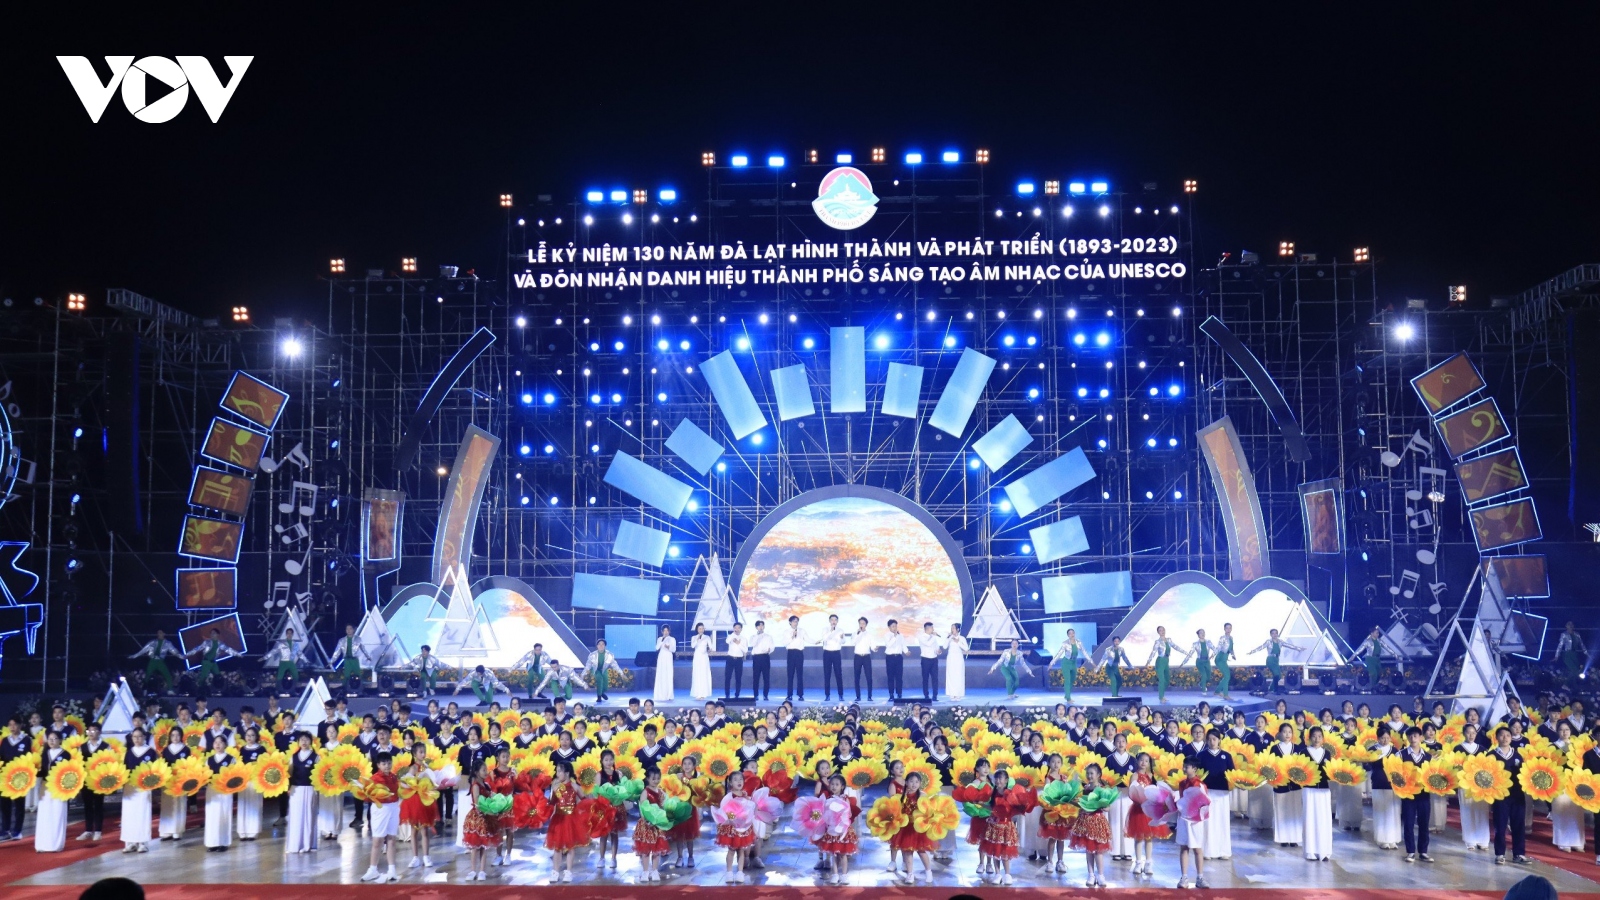 Đà Lạt đón nhận danh hiệu thành phố sáng tạo về âm nhạc của UNESCO